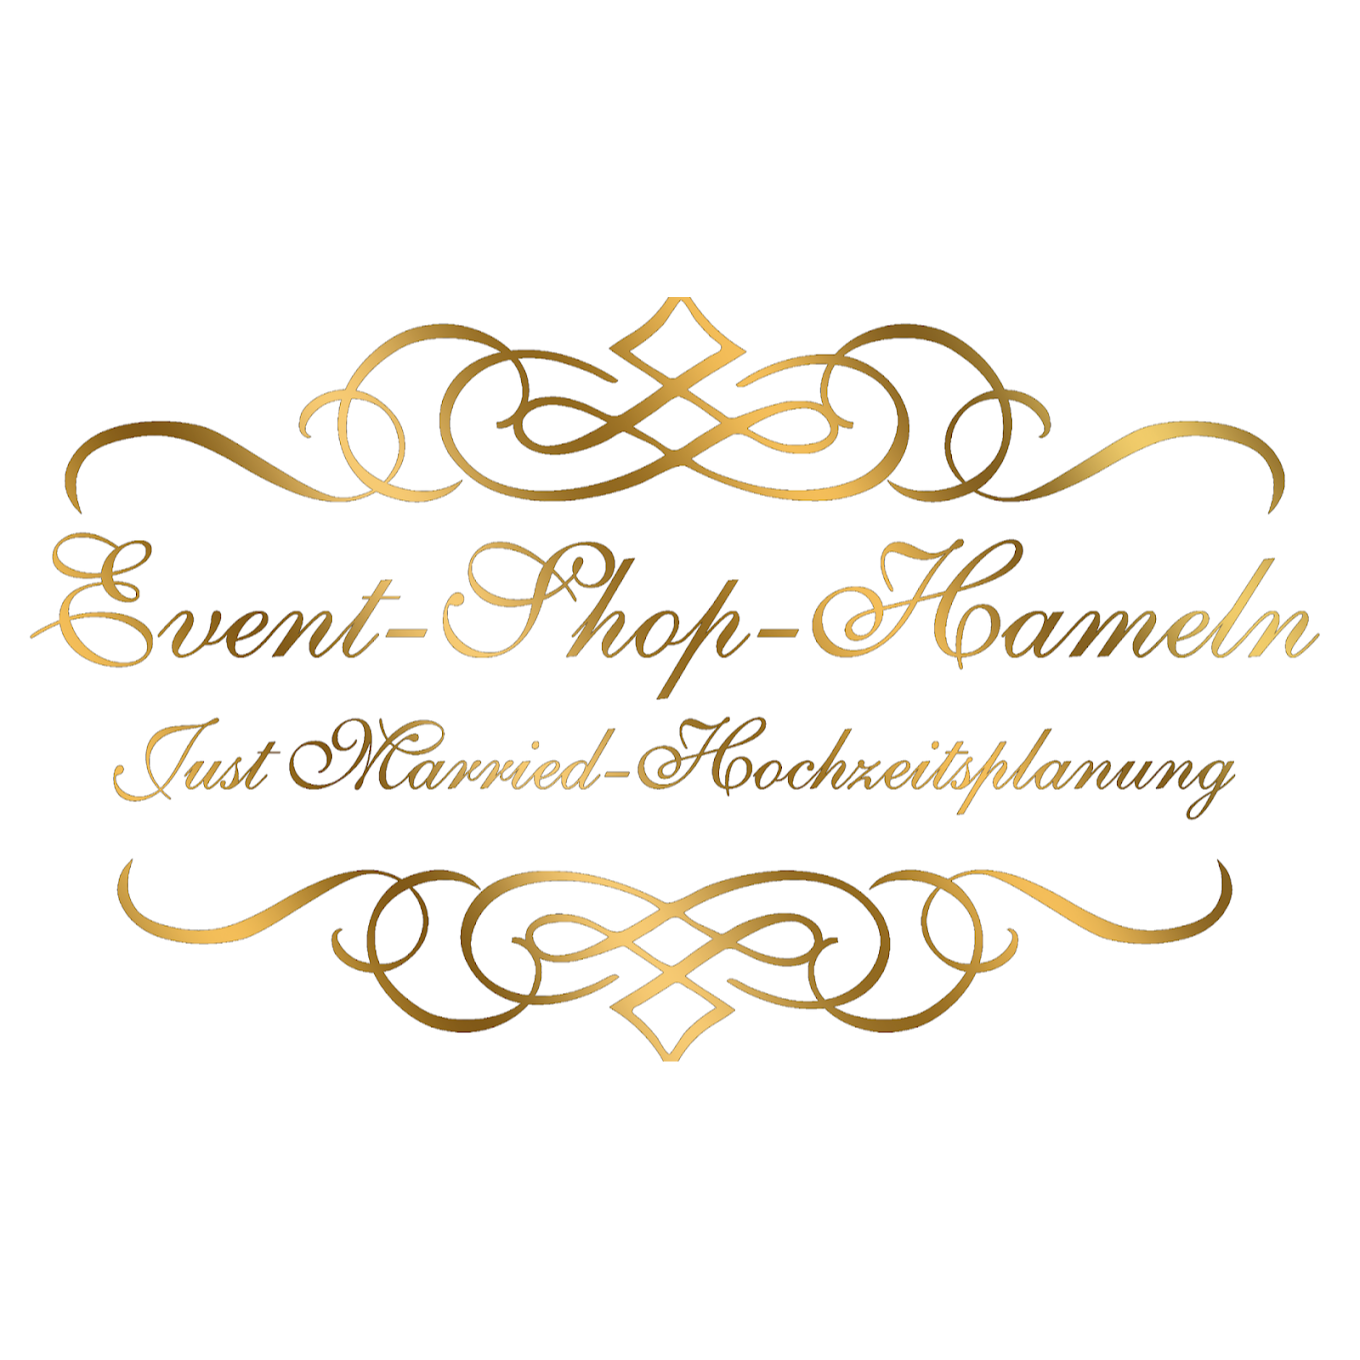 Logo Just-Married-Hochzeitsplanung und Event-Shop Hameln